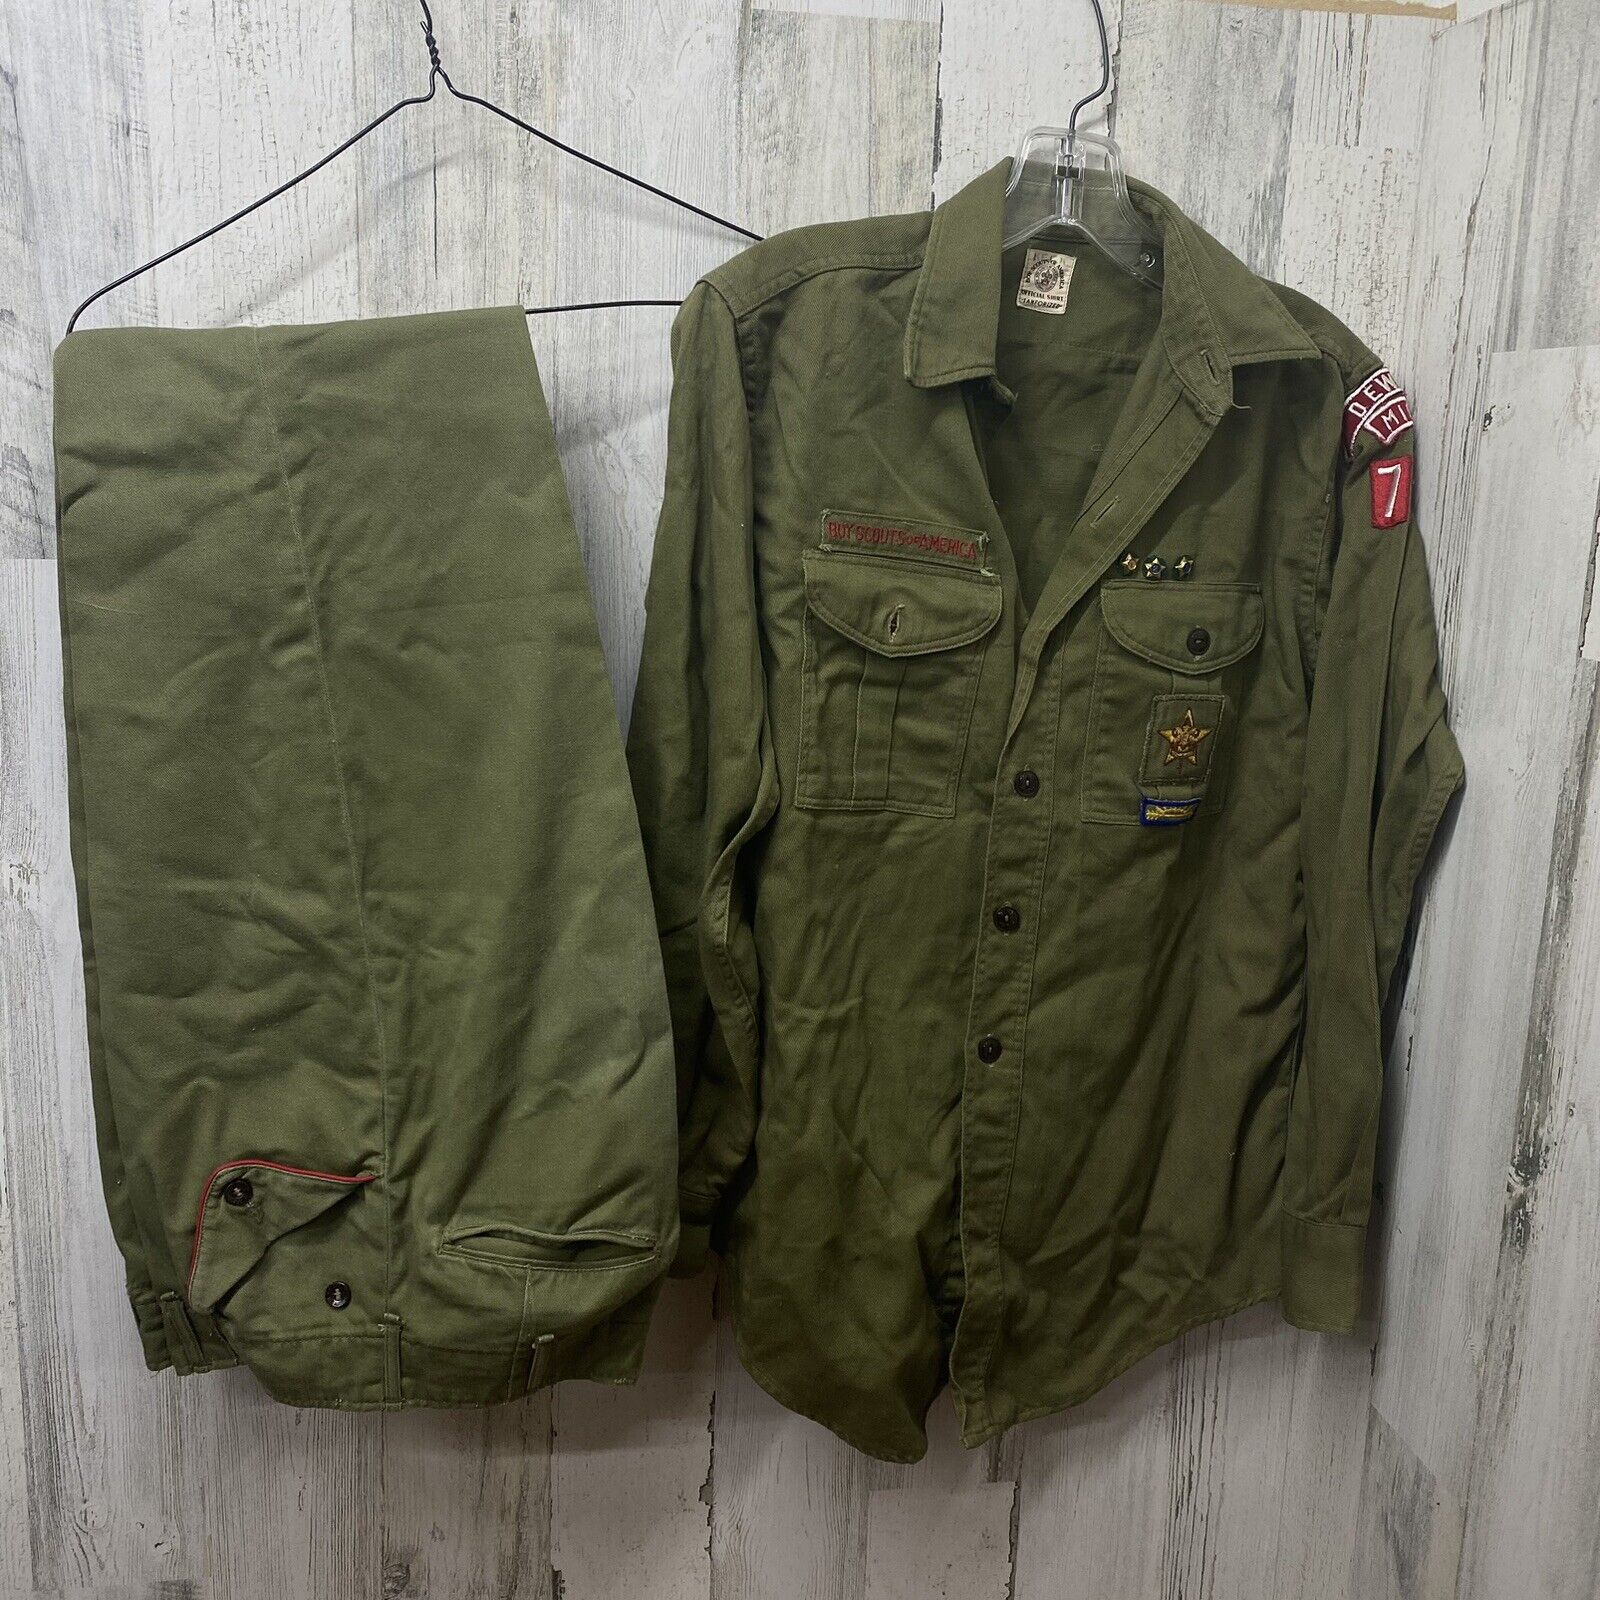 Vintage BSA Boy Scout Uniform Sanforized Shirt Pants Patches Pins Dewitt Mich 77